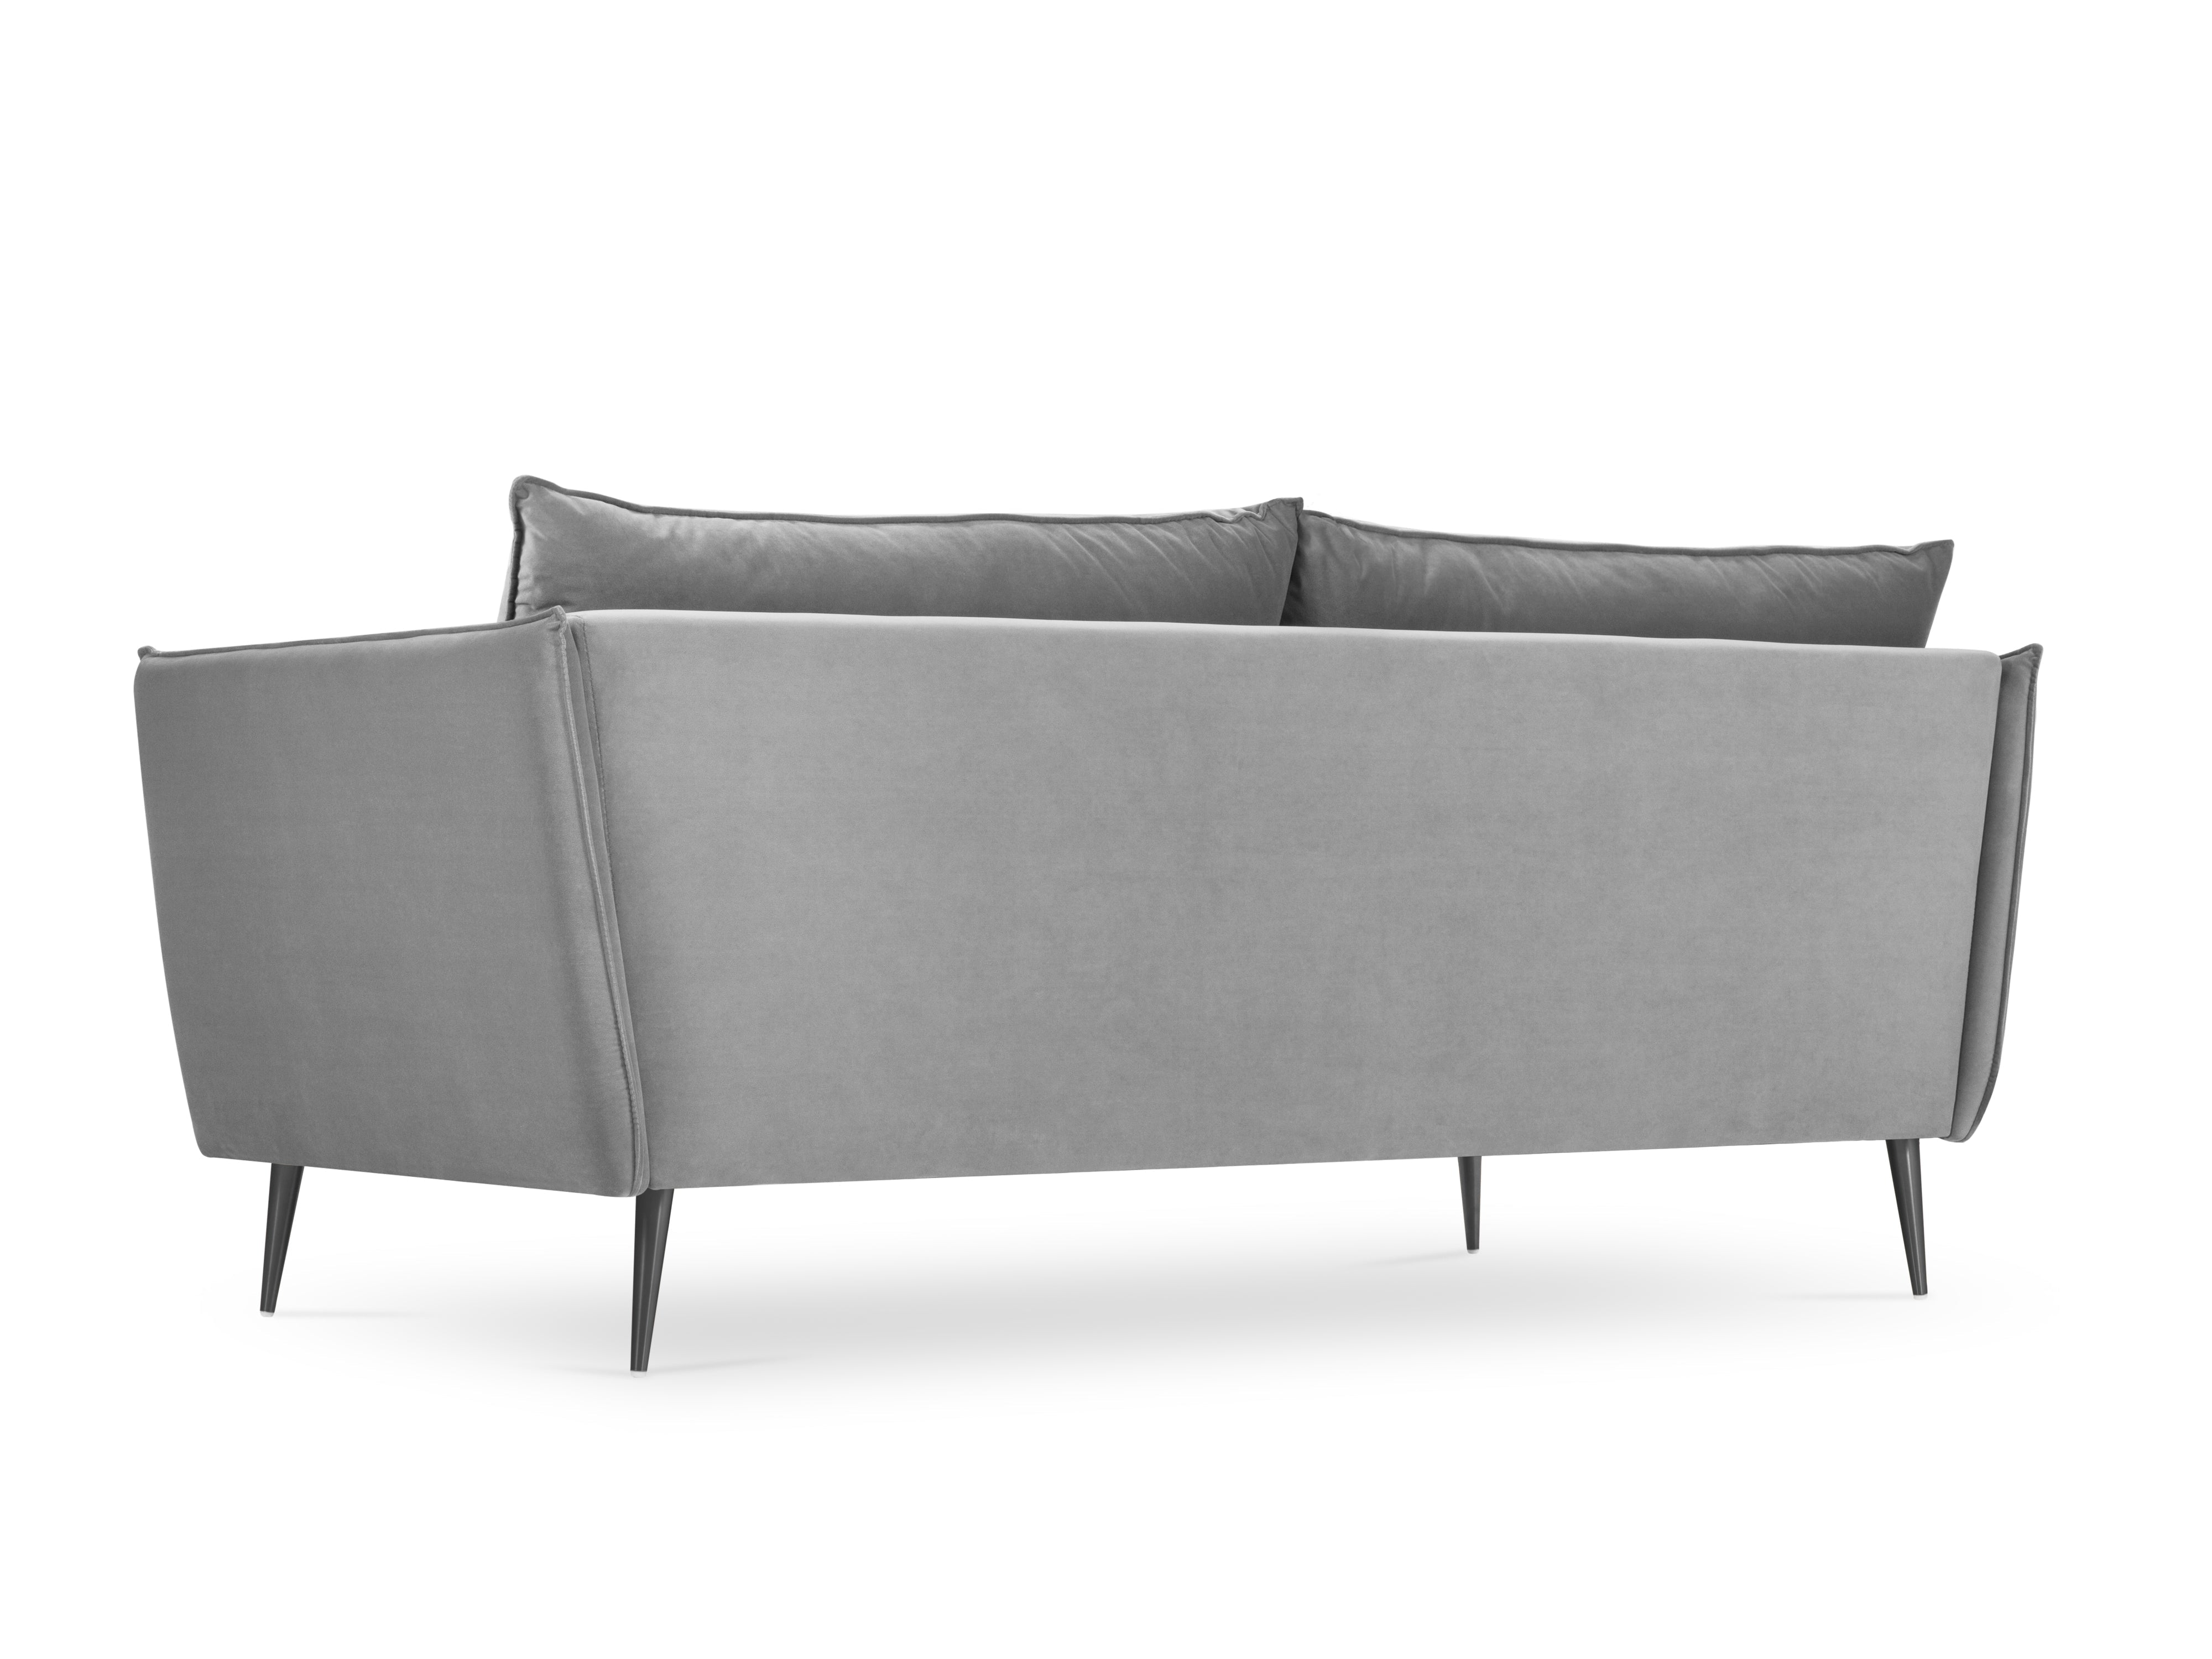 4-person sofa agate light gray